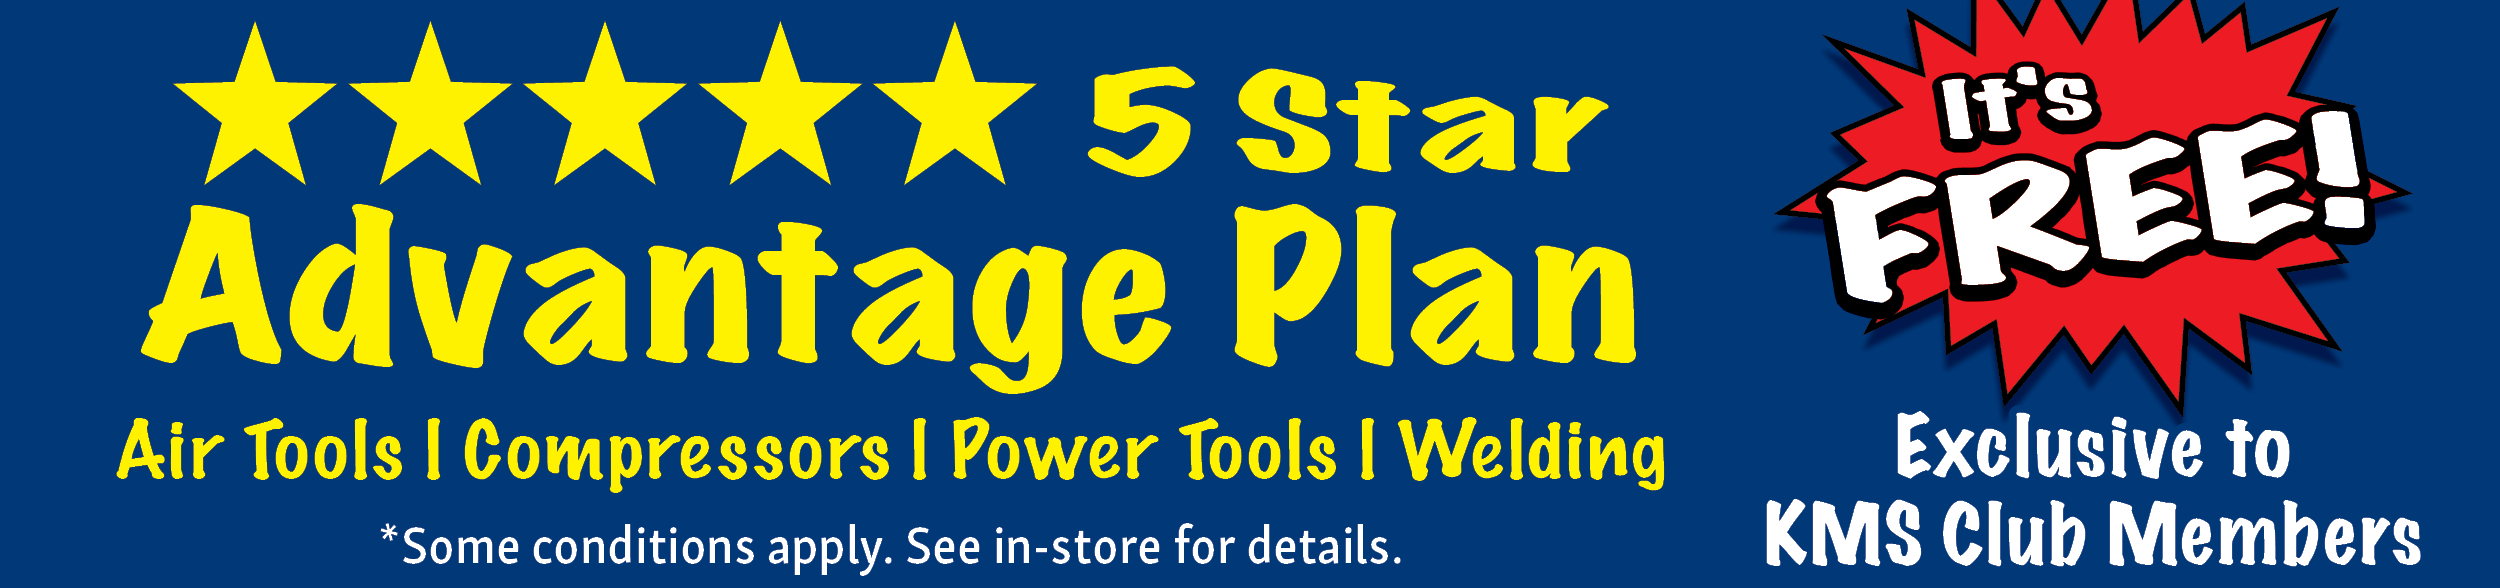 5 Star Advantage Plan